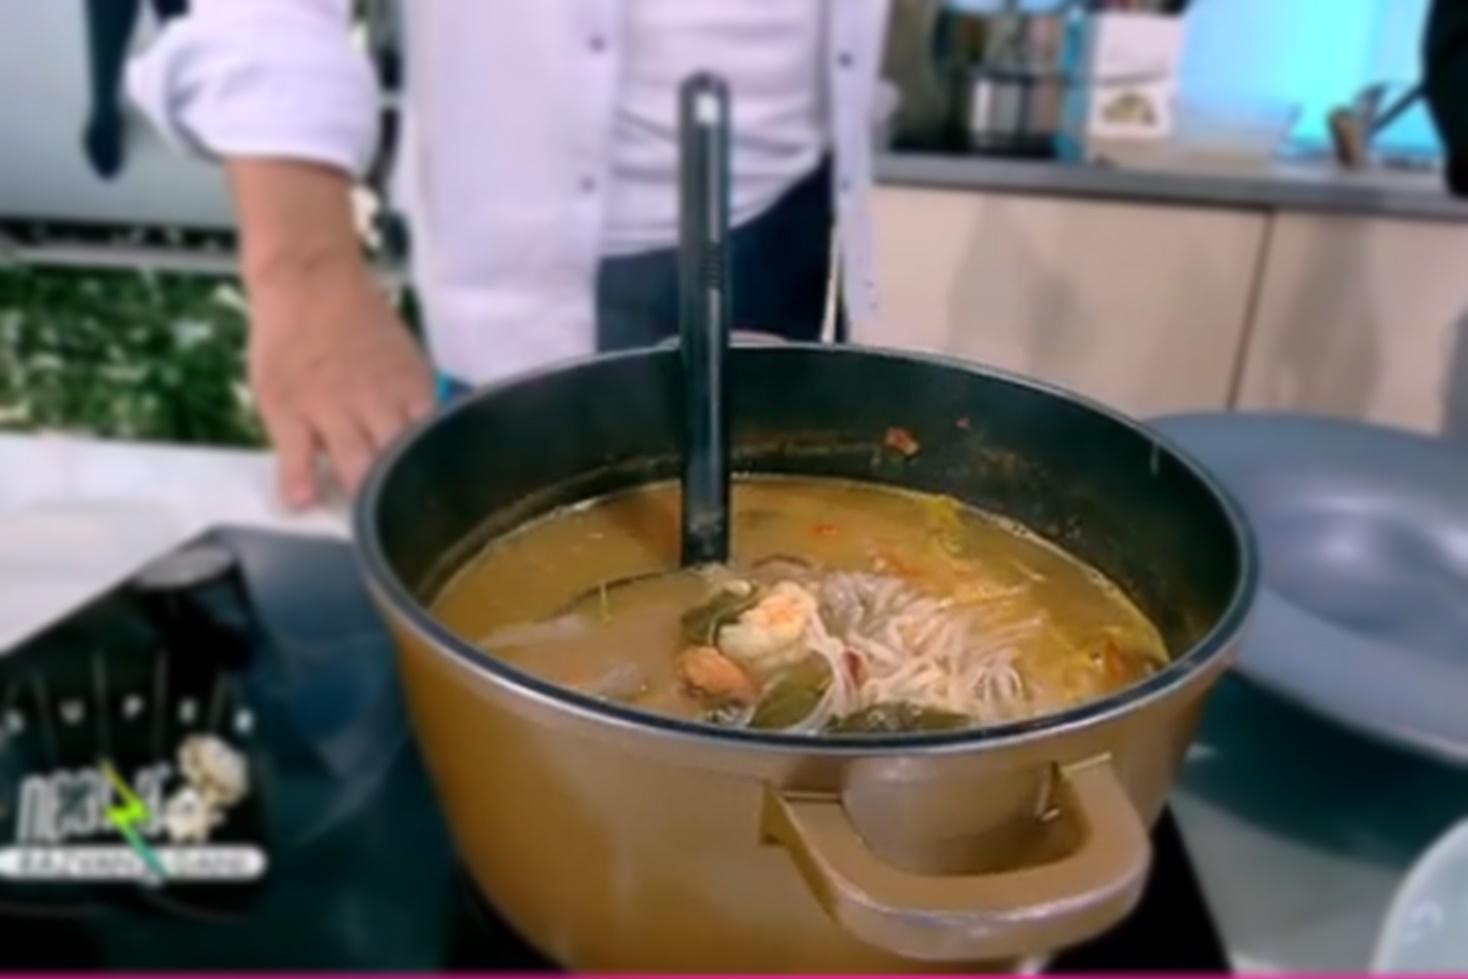 Supa thailandeză Tom Yum se servește fierbinte, decorată cu coriandru proaspăt